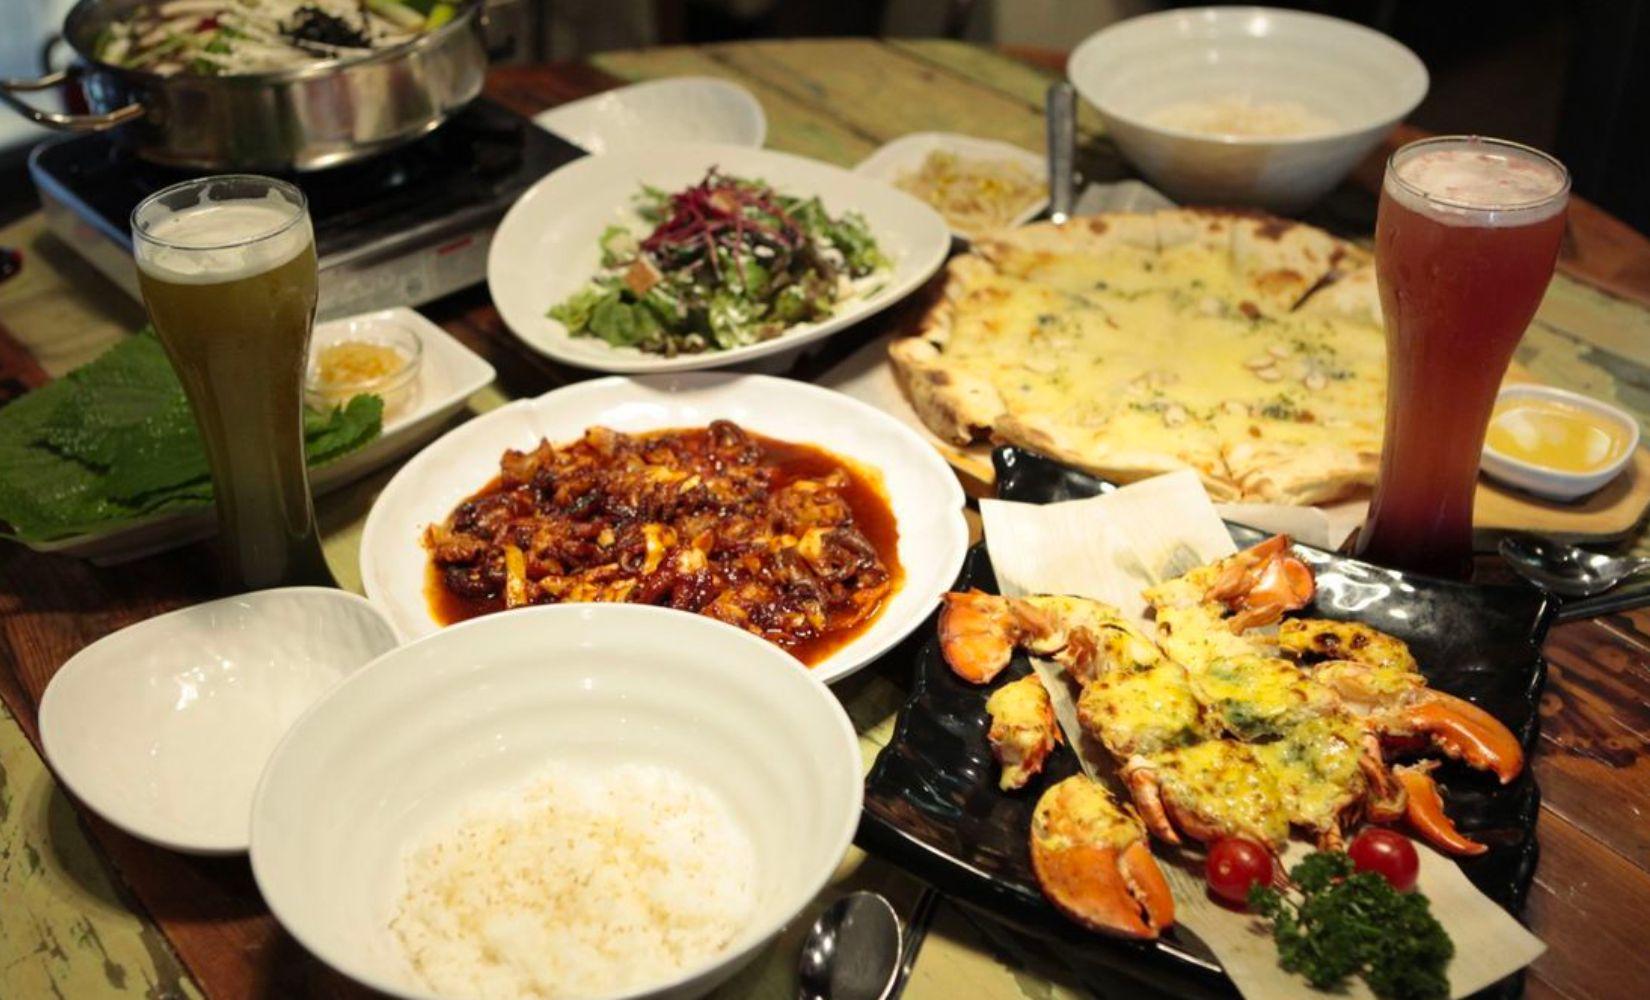 The Sic-Ddang: Nhà hàng hải sản với set tôm hùm rẻ và ngon ở Myeongdong